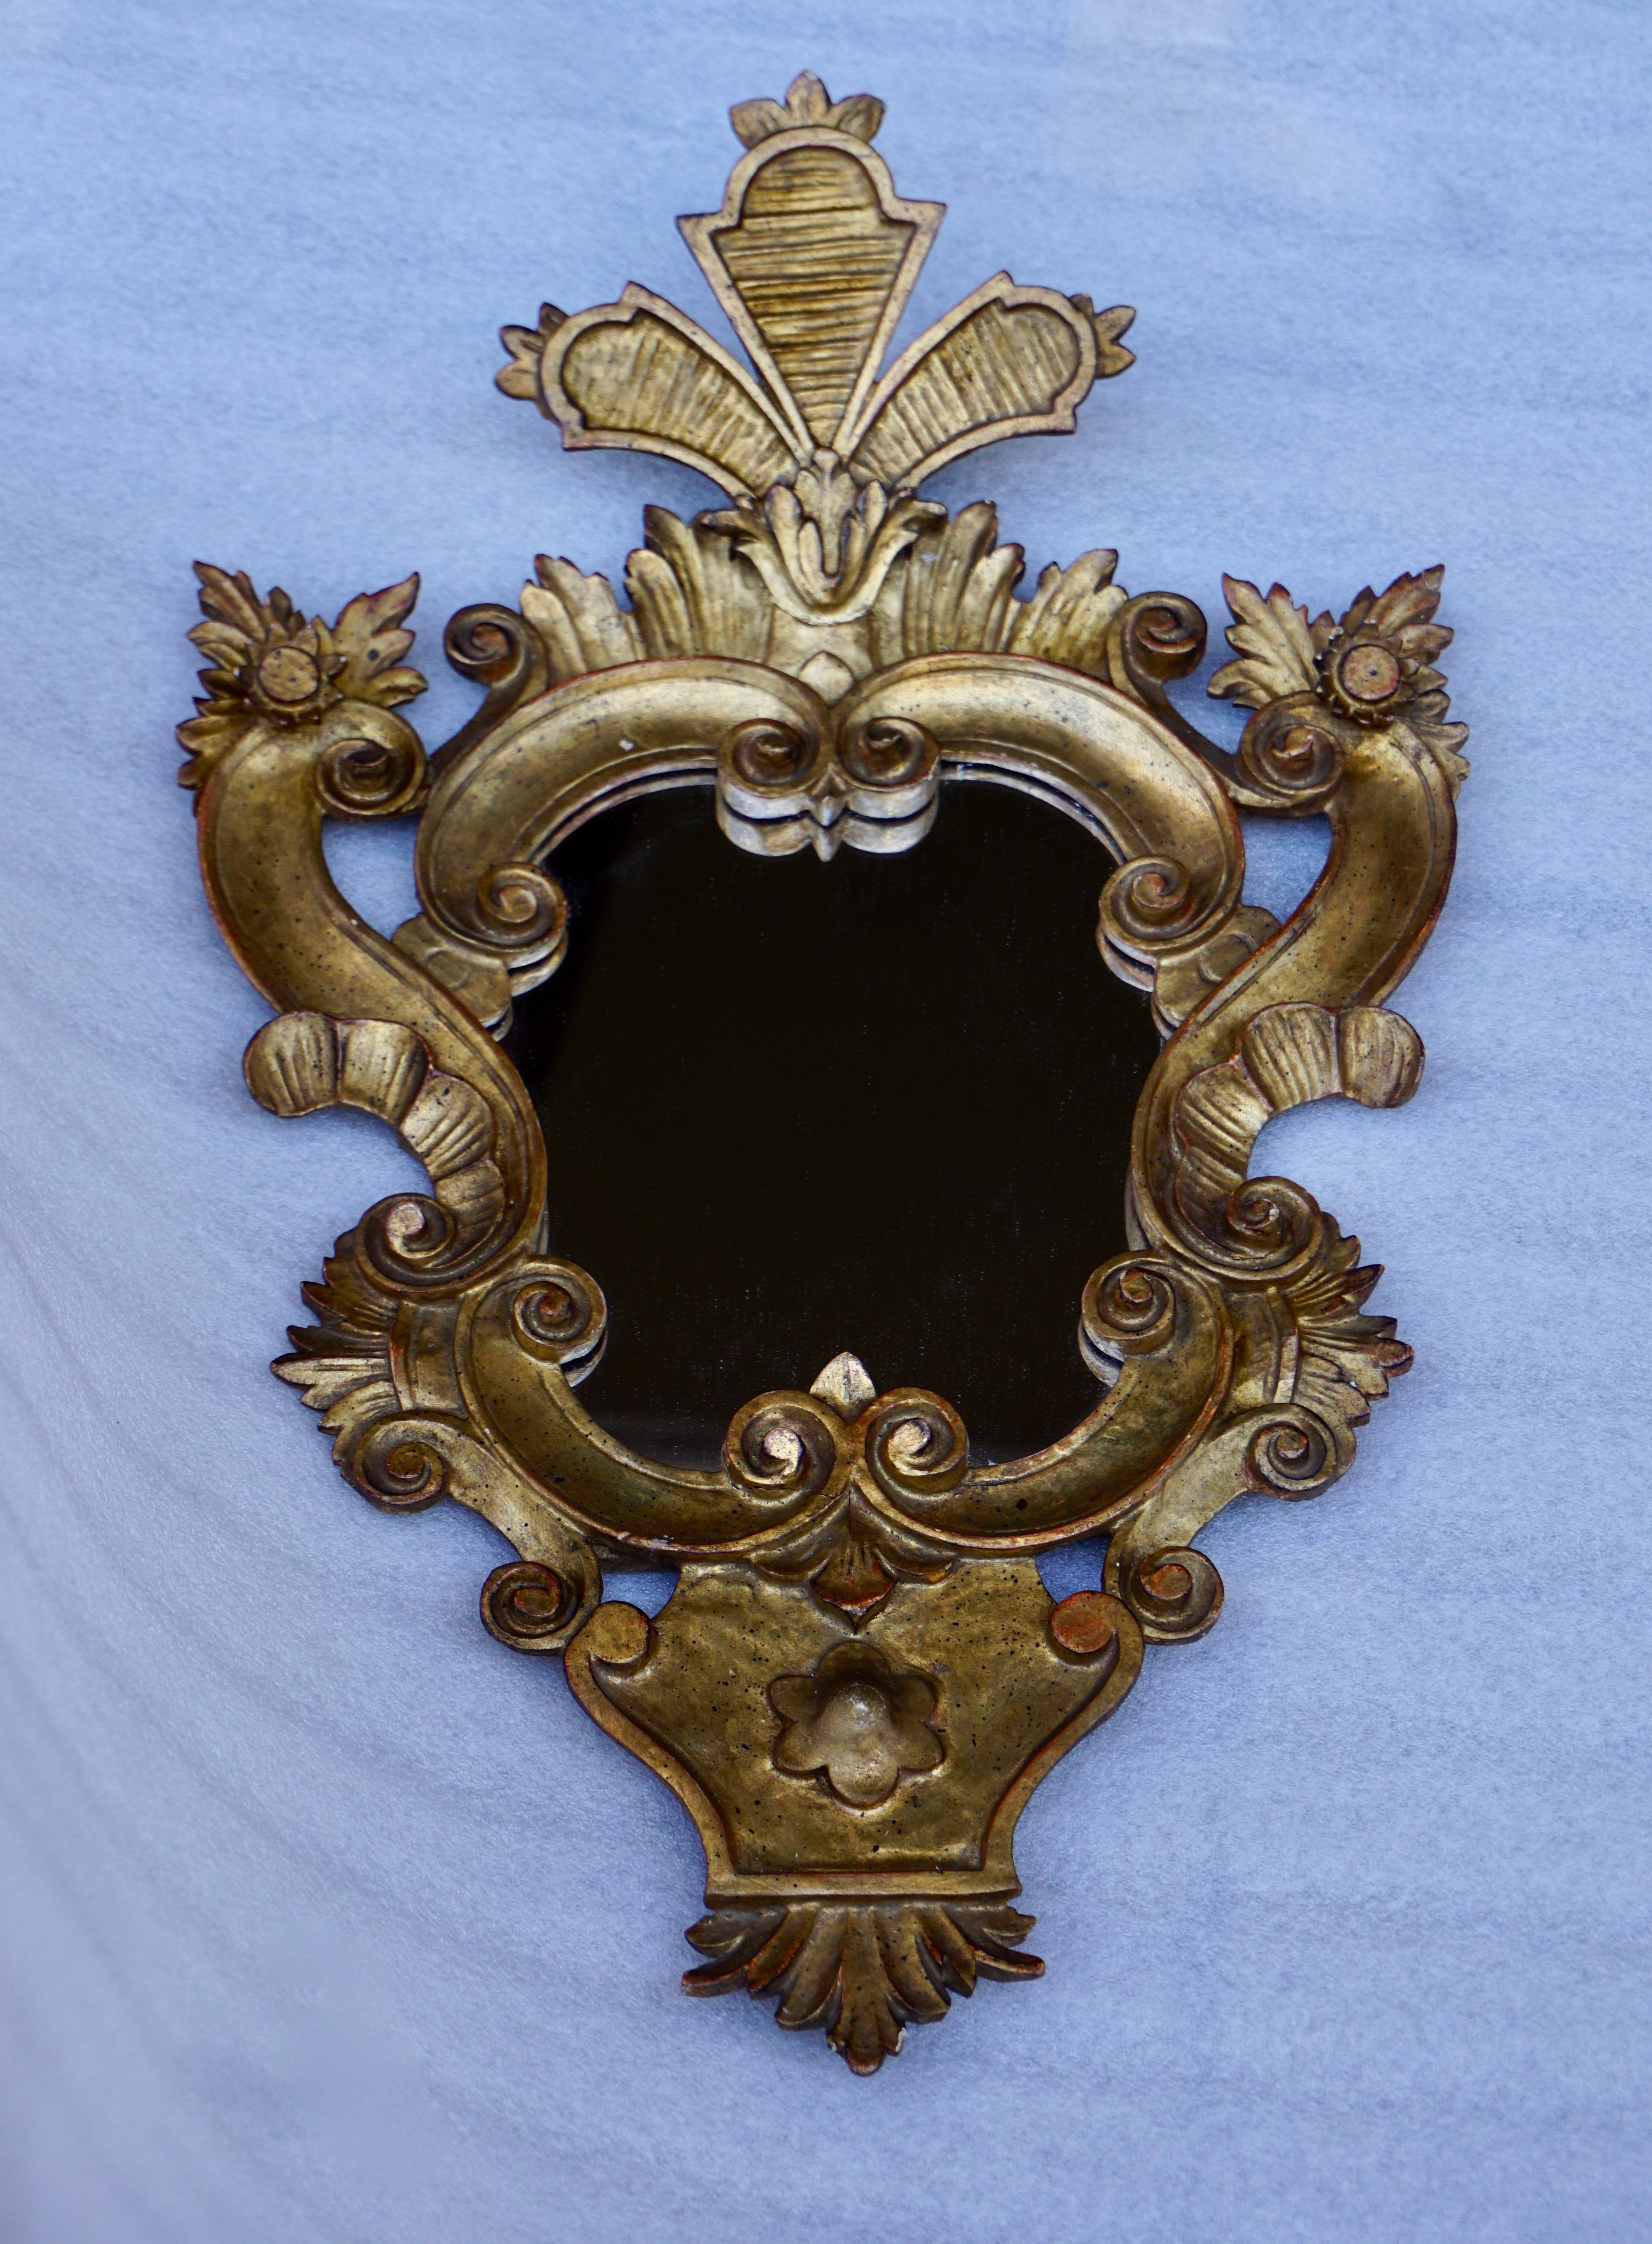 Schöne große venezianische Rokoko-Stil geschnitzt vergoldetem Holz Spiegel.
Maße: Höhe 60 cm.
Breite 38 cm.
Tiefe 10 cm.